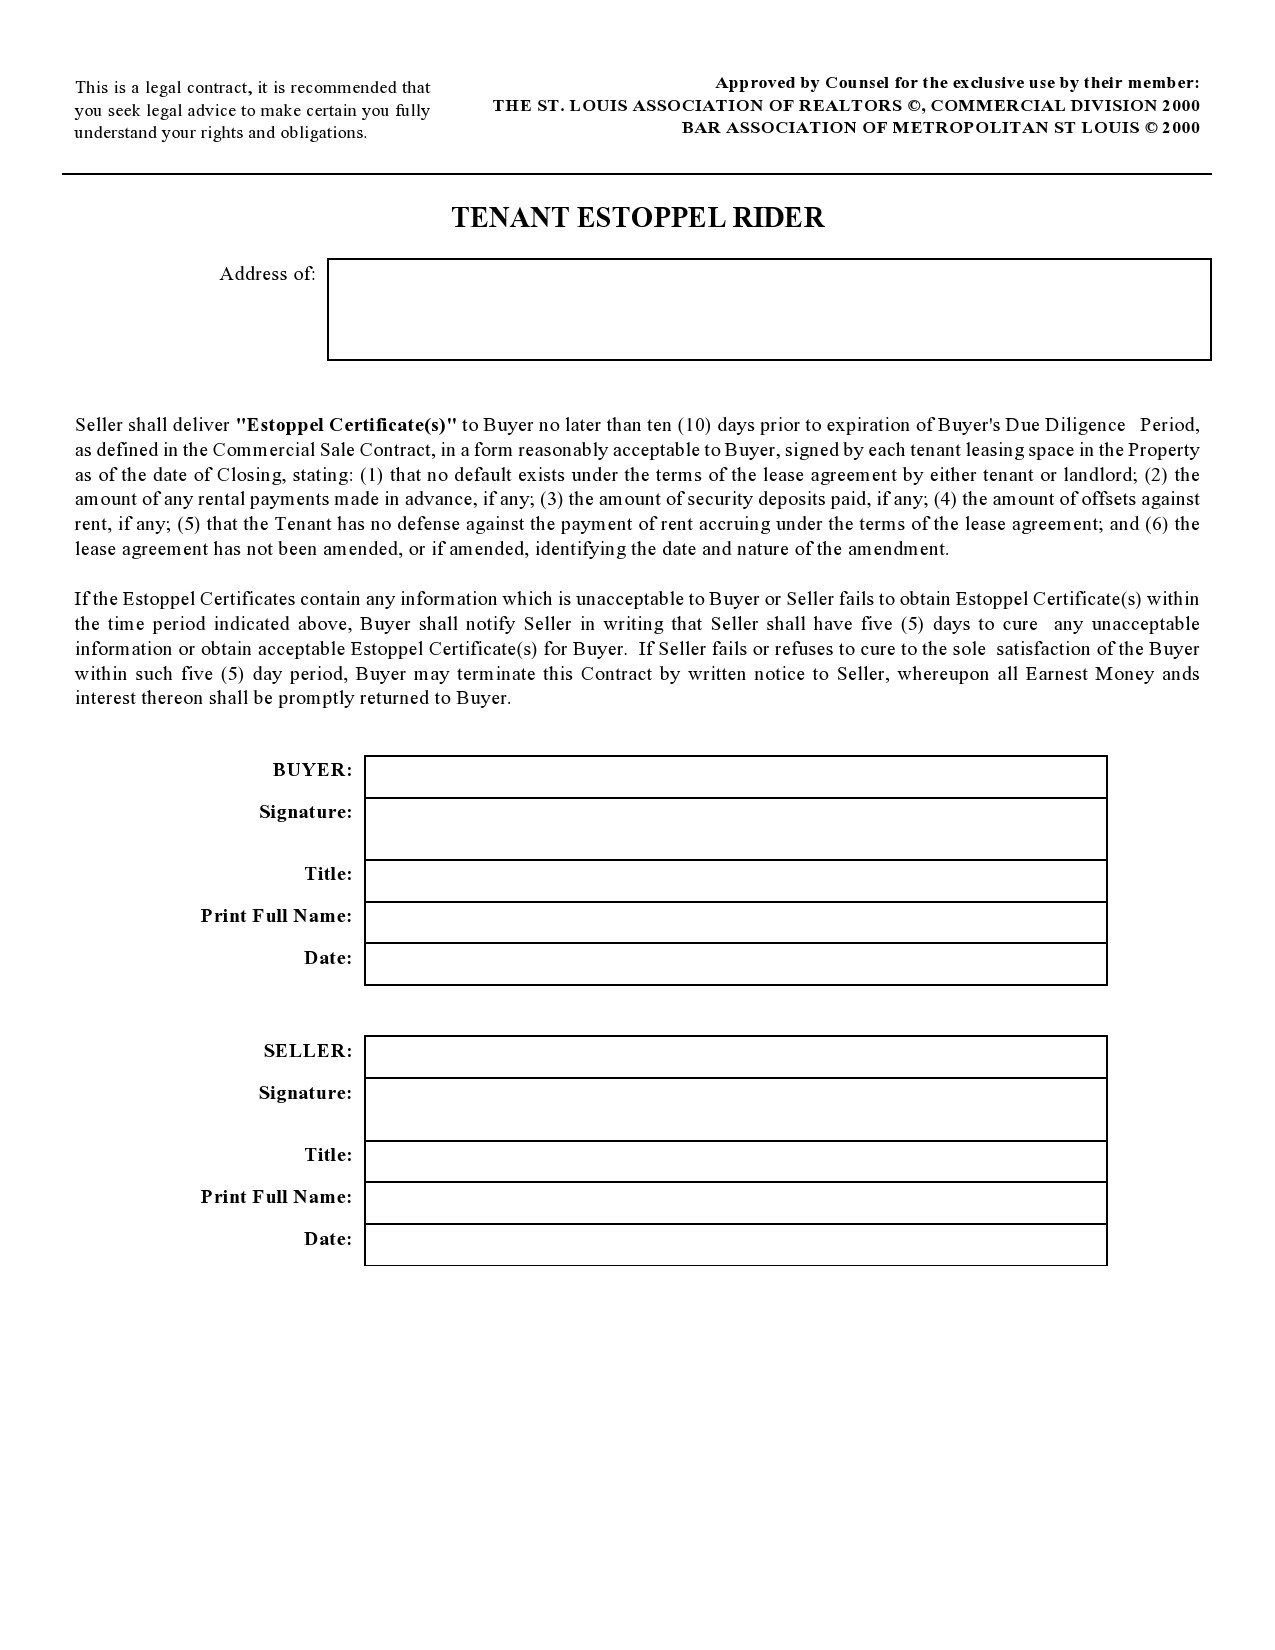 Free estoppel certificate form 33